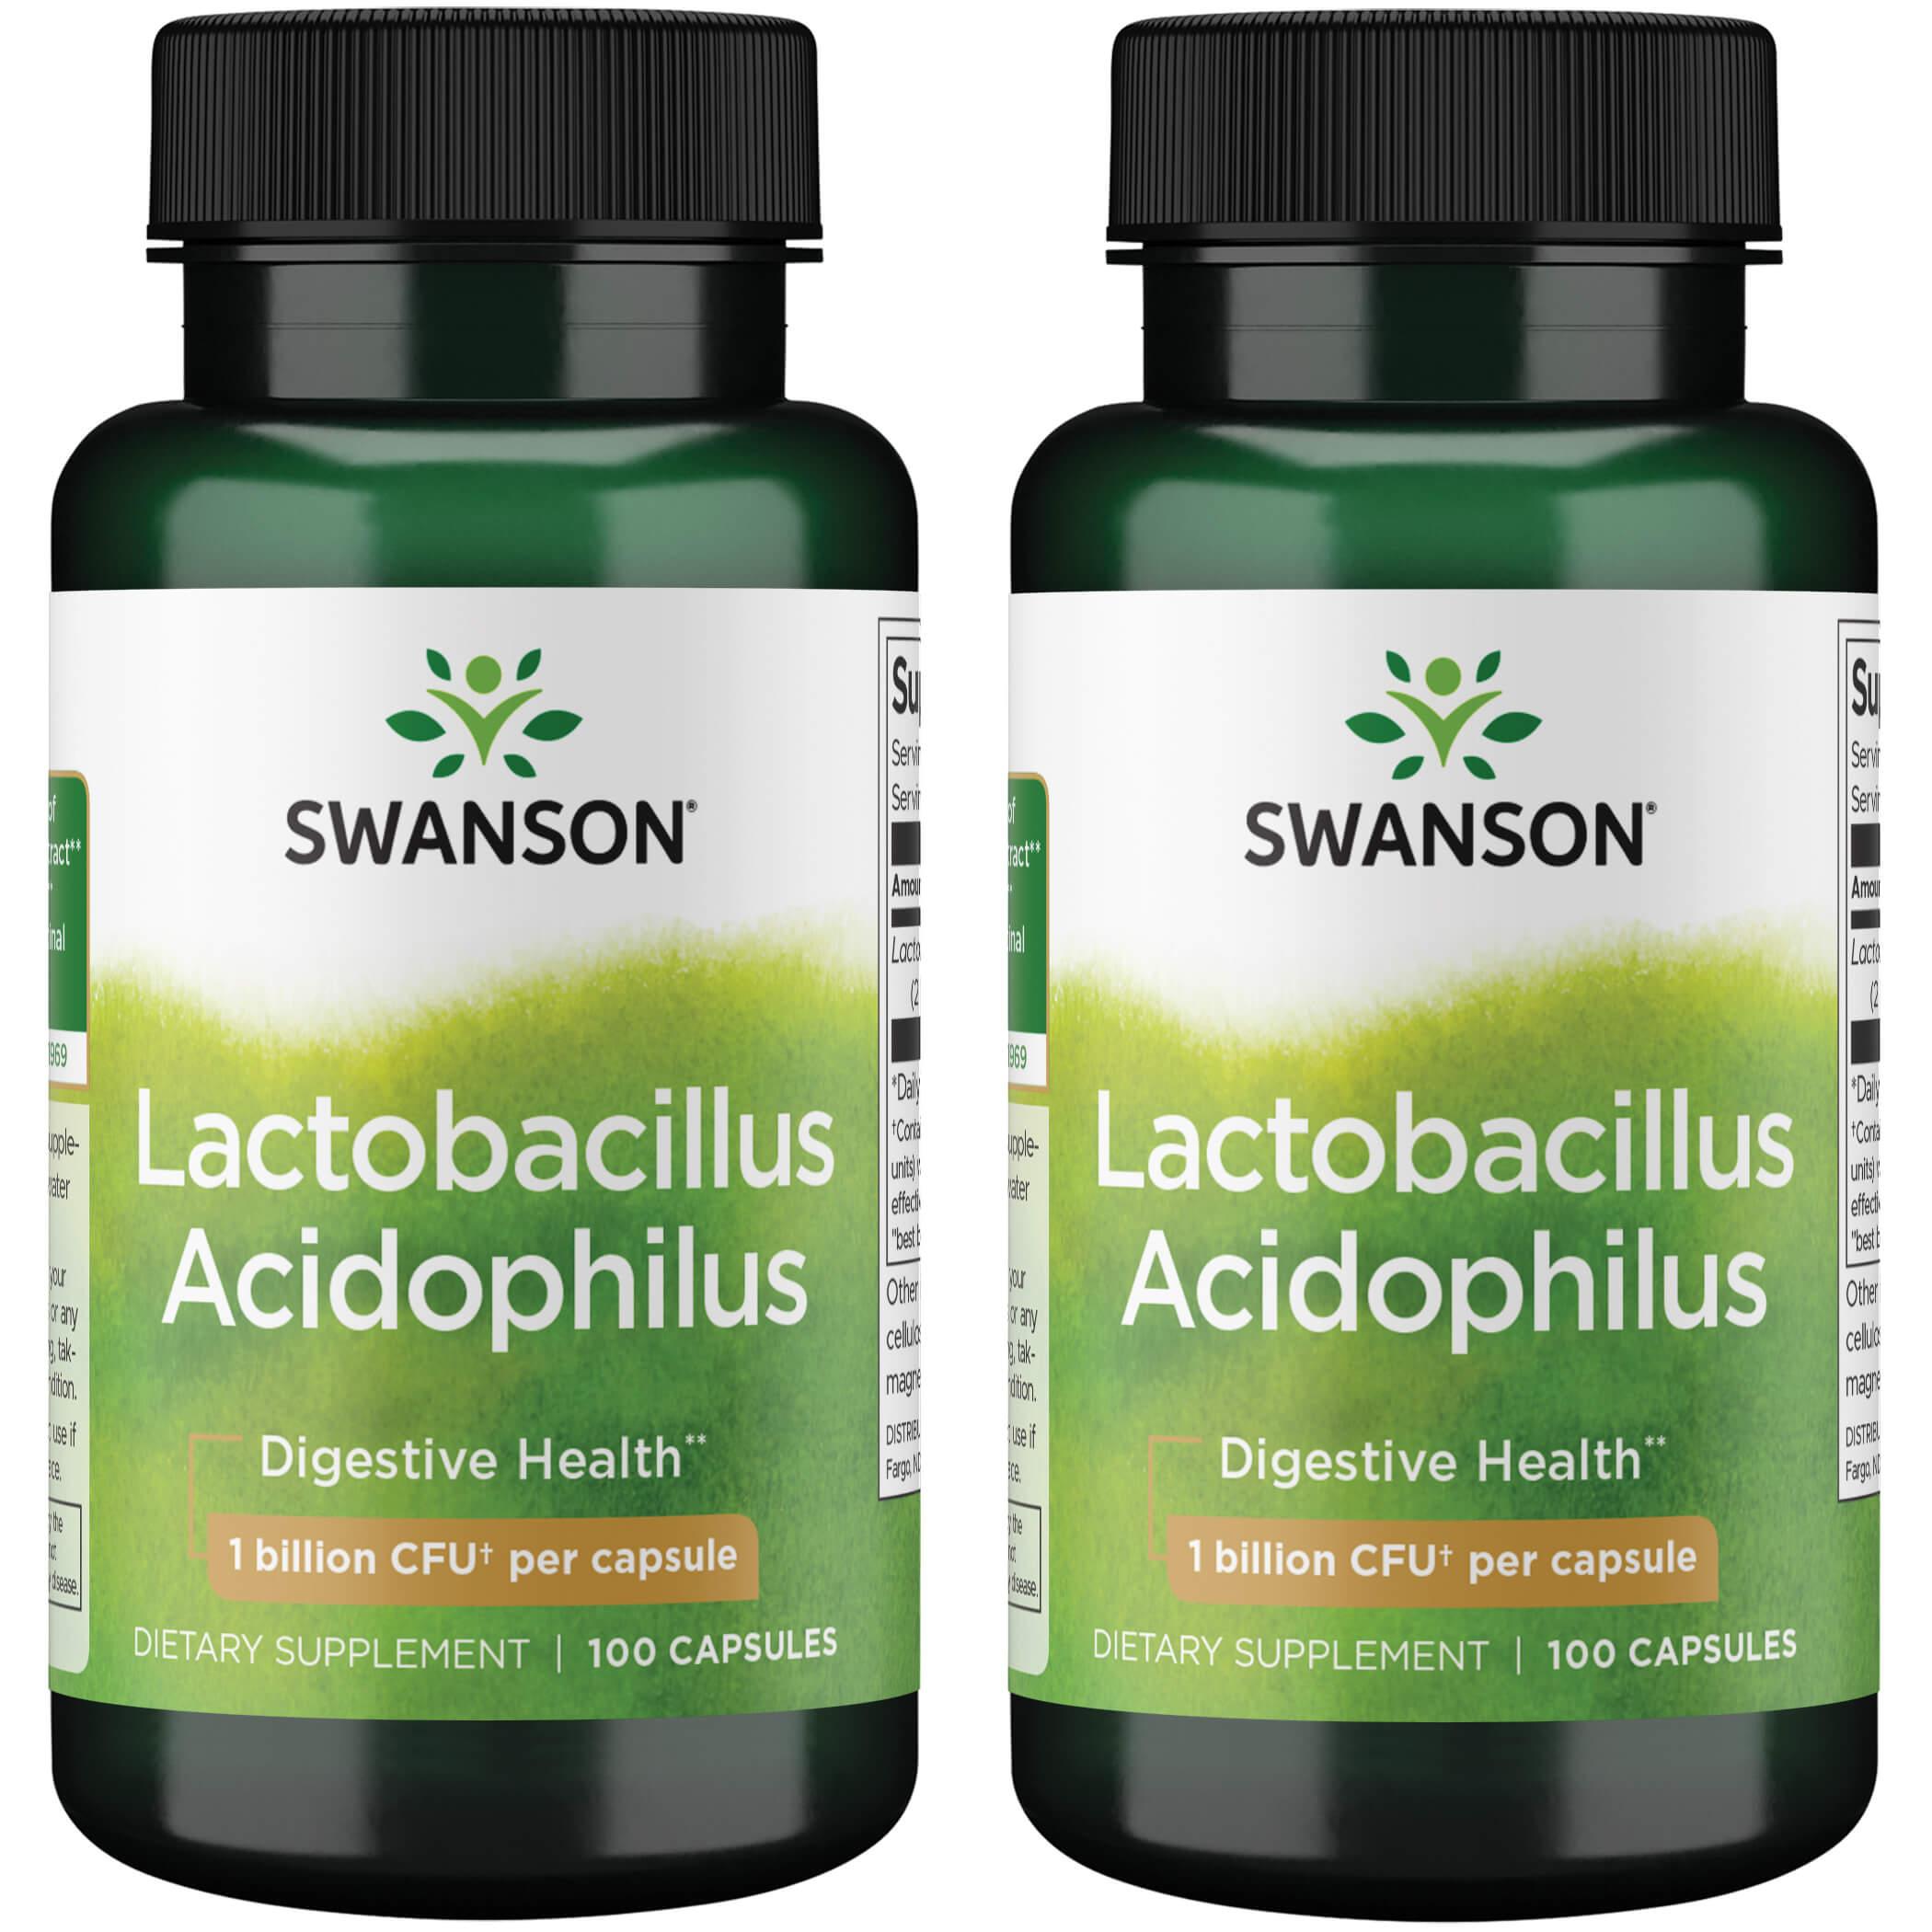 Swanson Premium Lactobacillus Acidophilus 2 Pack Supplement Vitamin 1 Billion CFU 100 Caps Probiotics